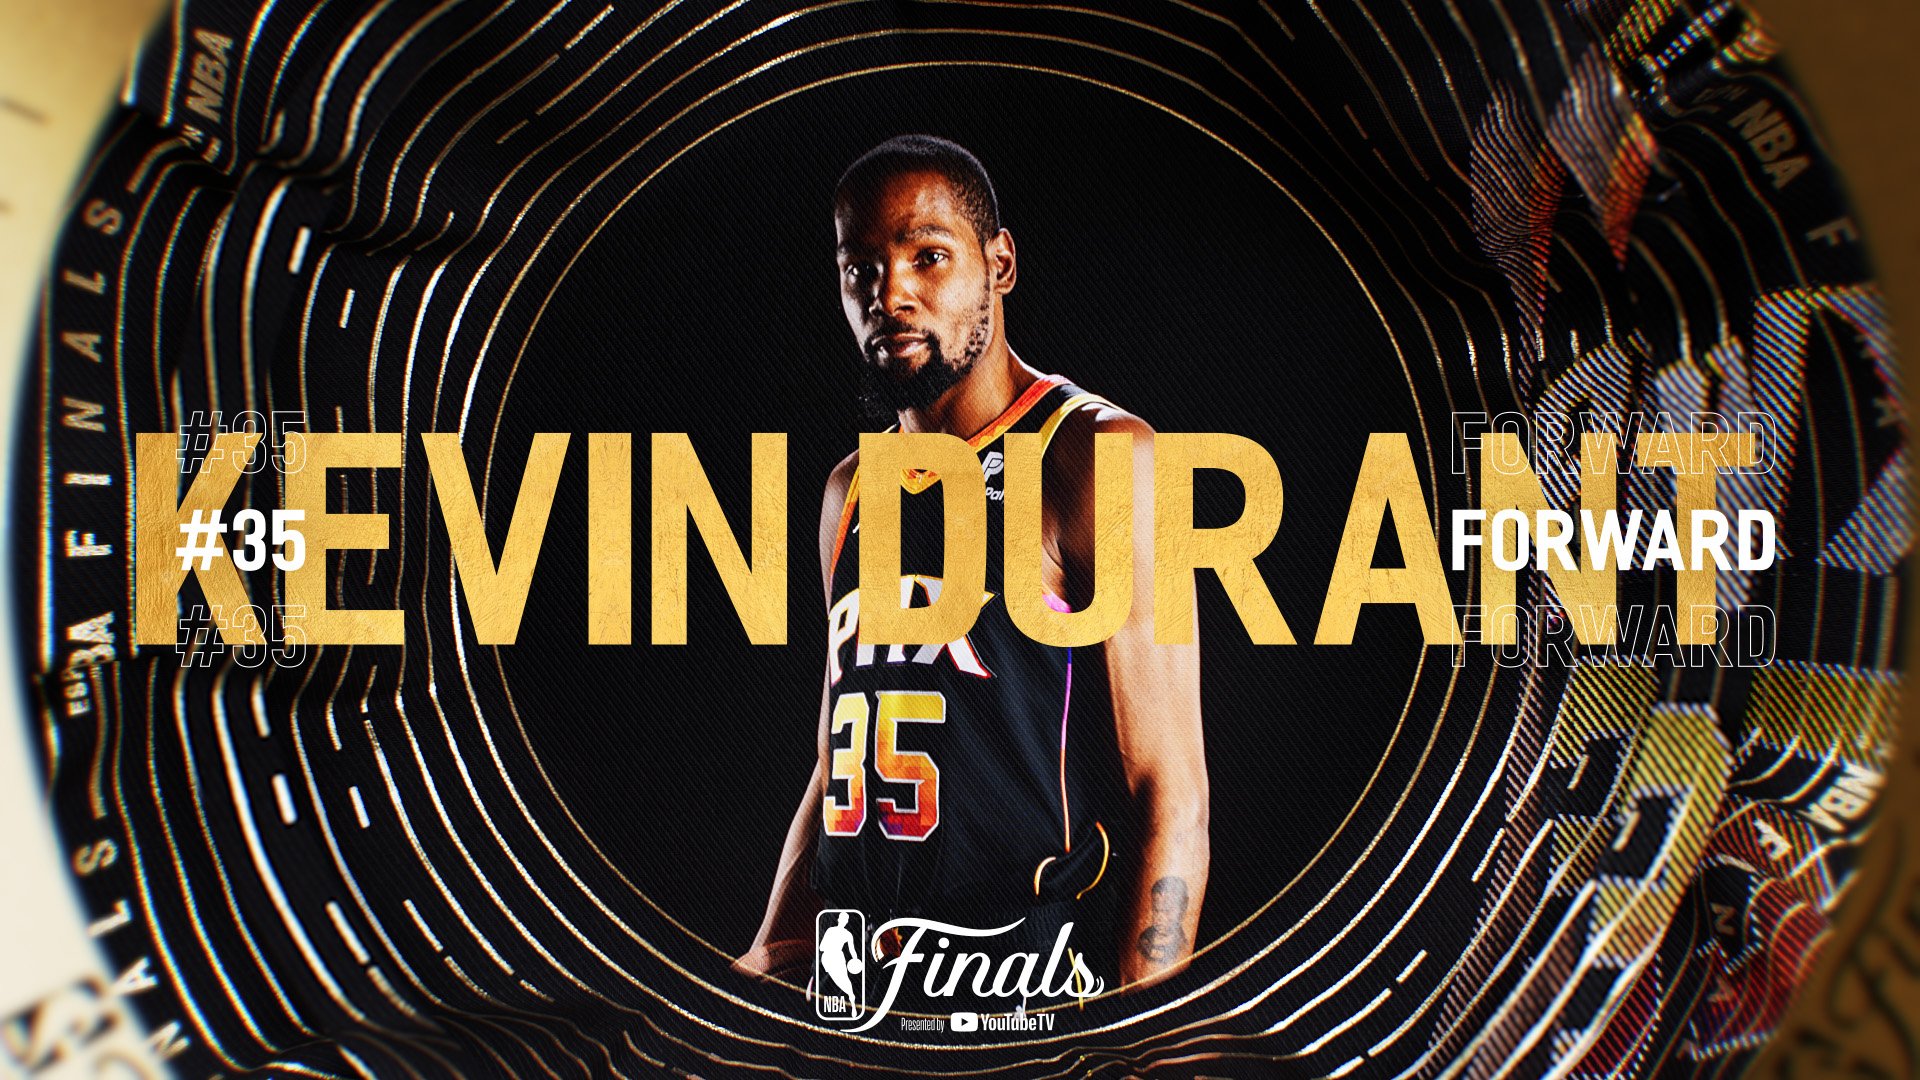 ESPN_NBA_Finals23_Design_J_RM_009_00004.jpg